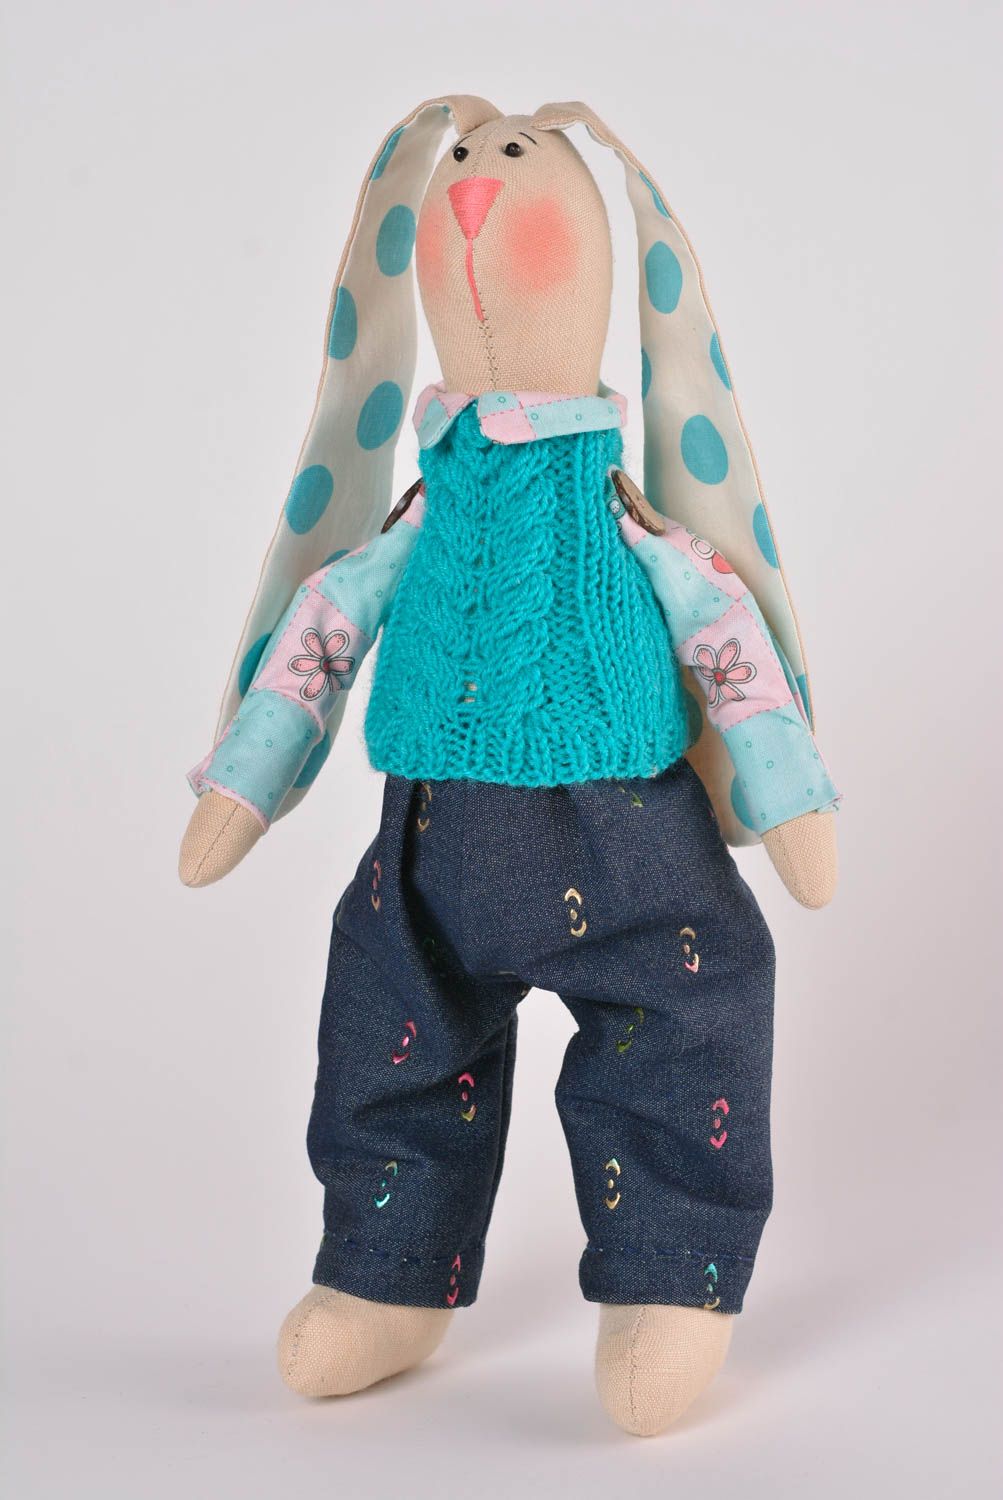 Muñeco de trapo hecho a mano juguete de tela peluche original cosido Conejito foto 1